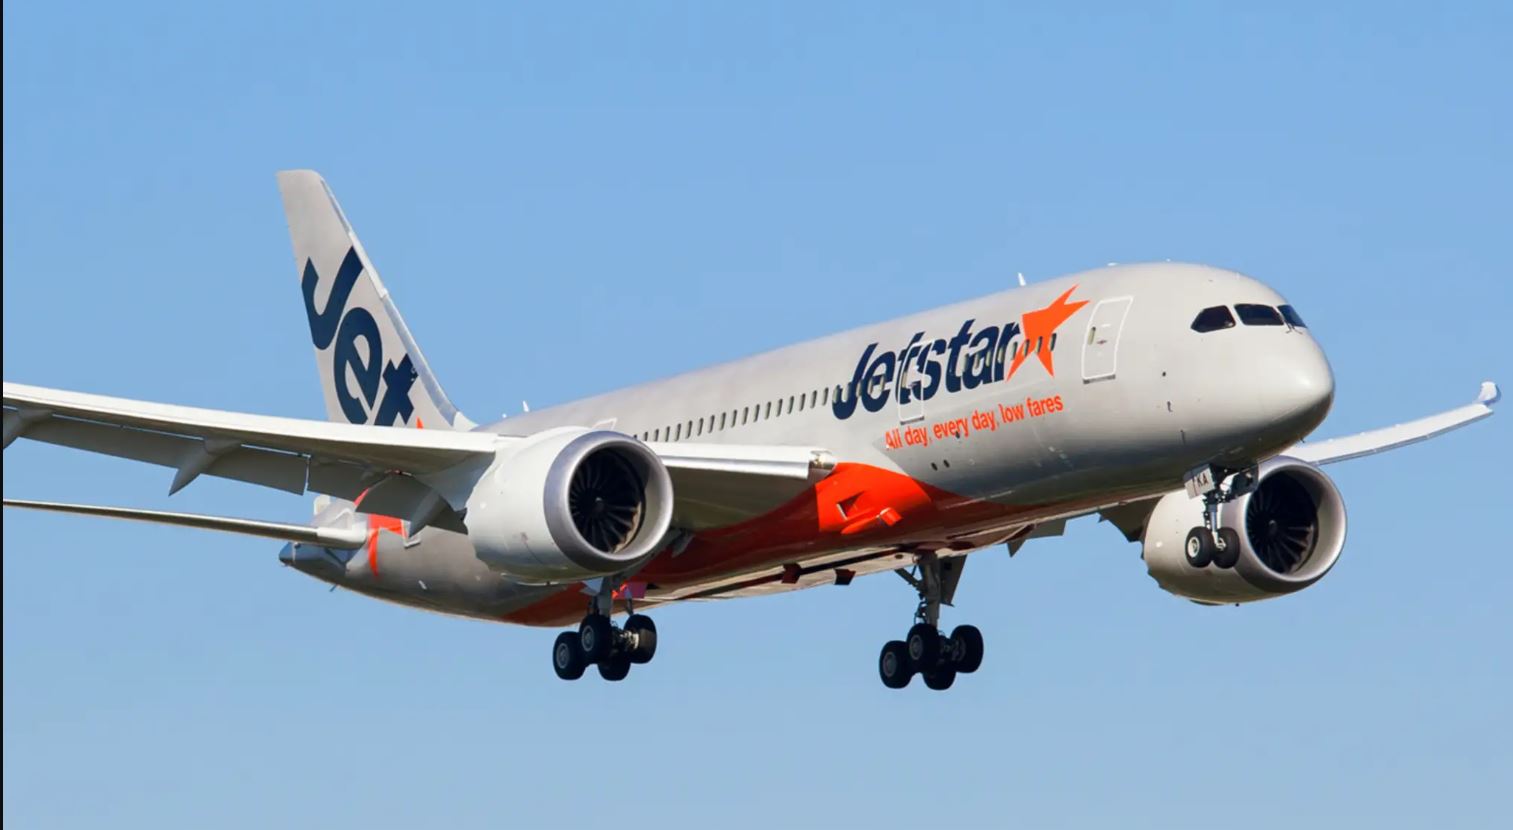 Problème de moteur à l'atterrissage pour un B787 de Jetstar